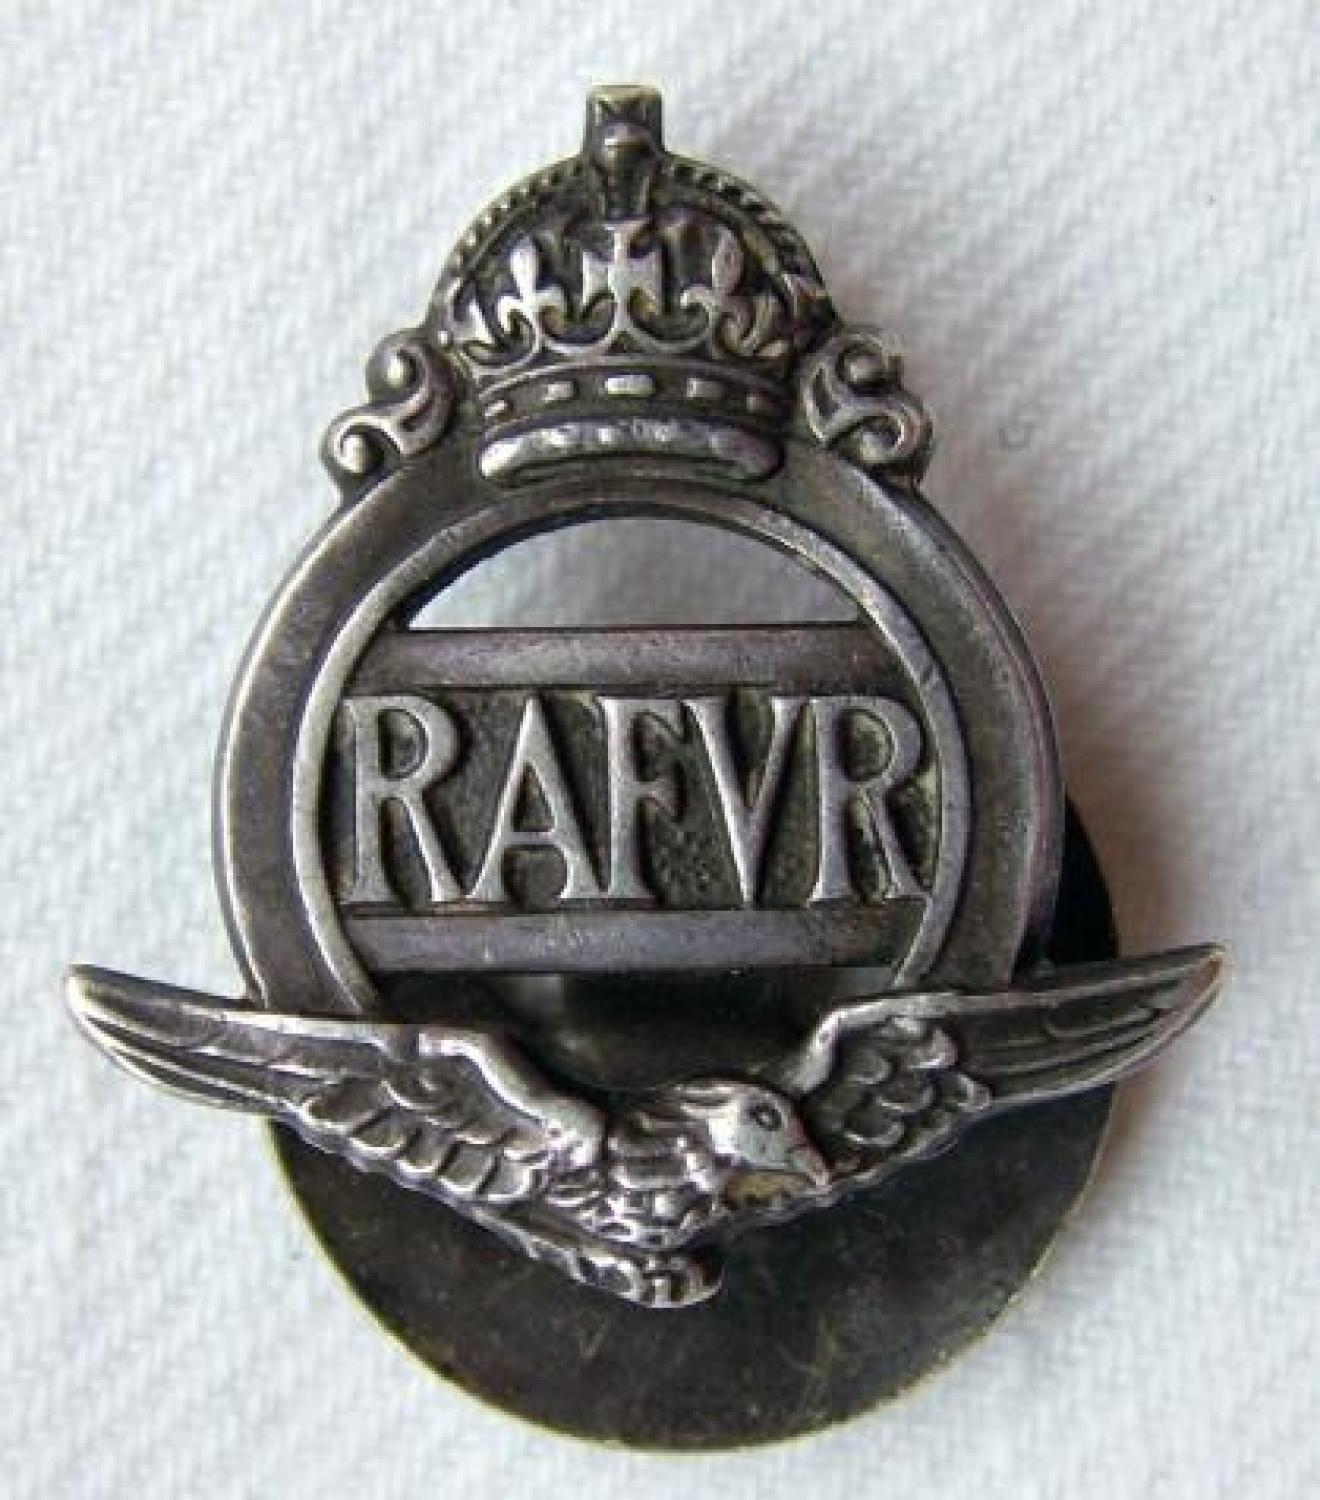 R.A.F.V.R. Lapel Badge